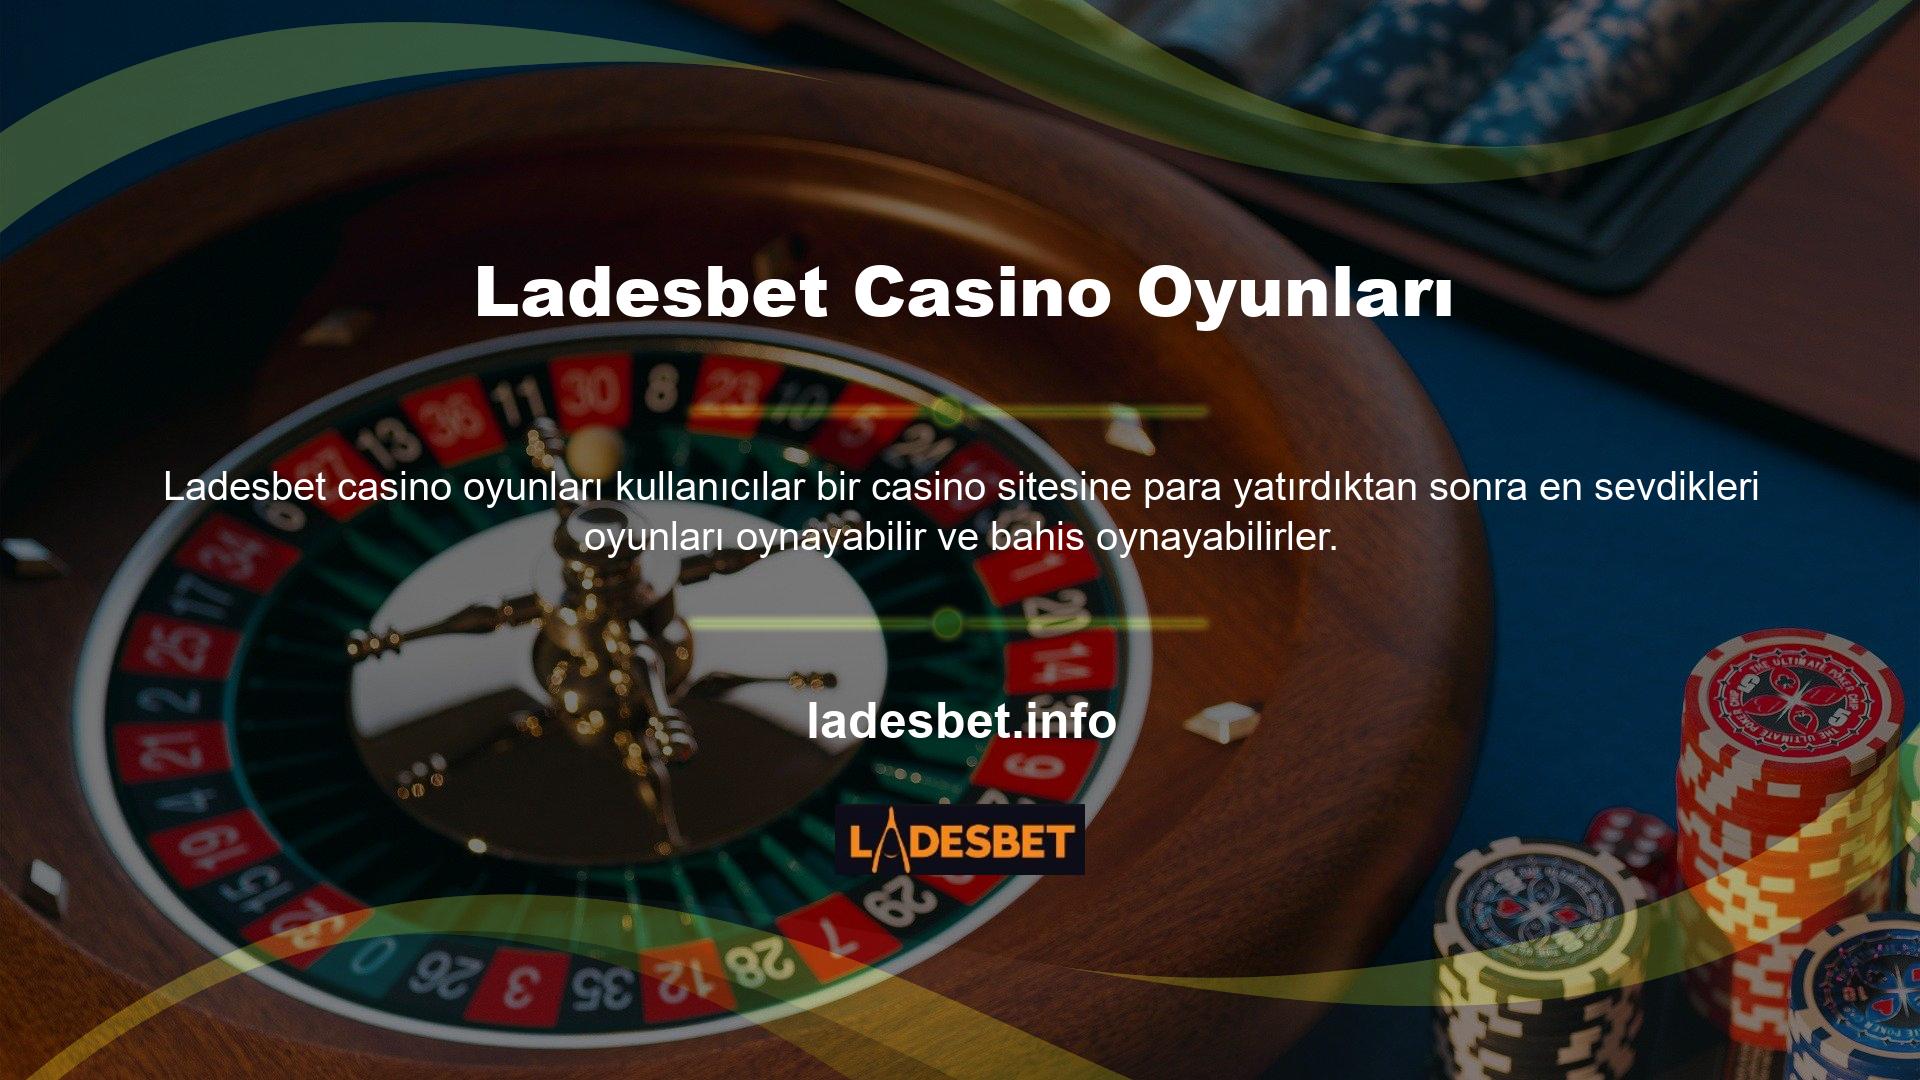 Canlı casino oyunlarının en popüler kategorisidir